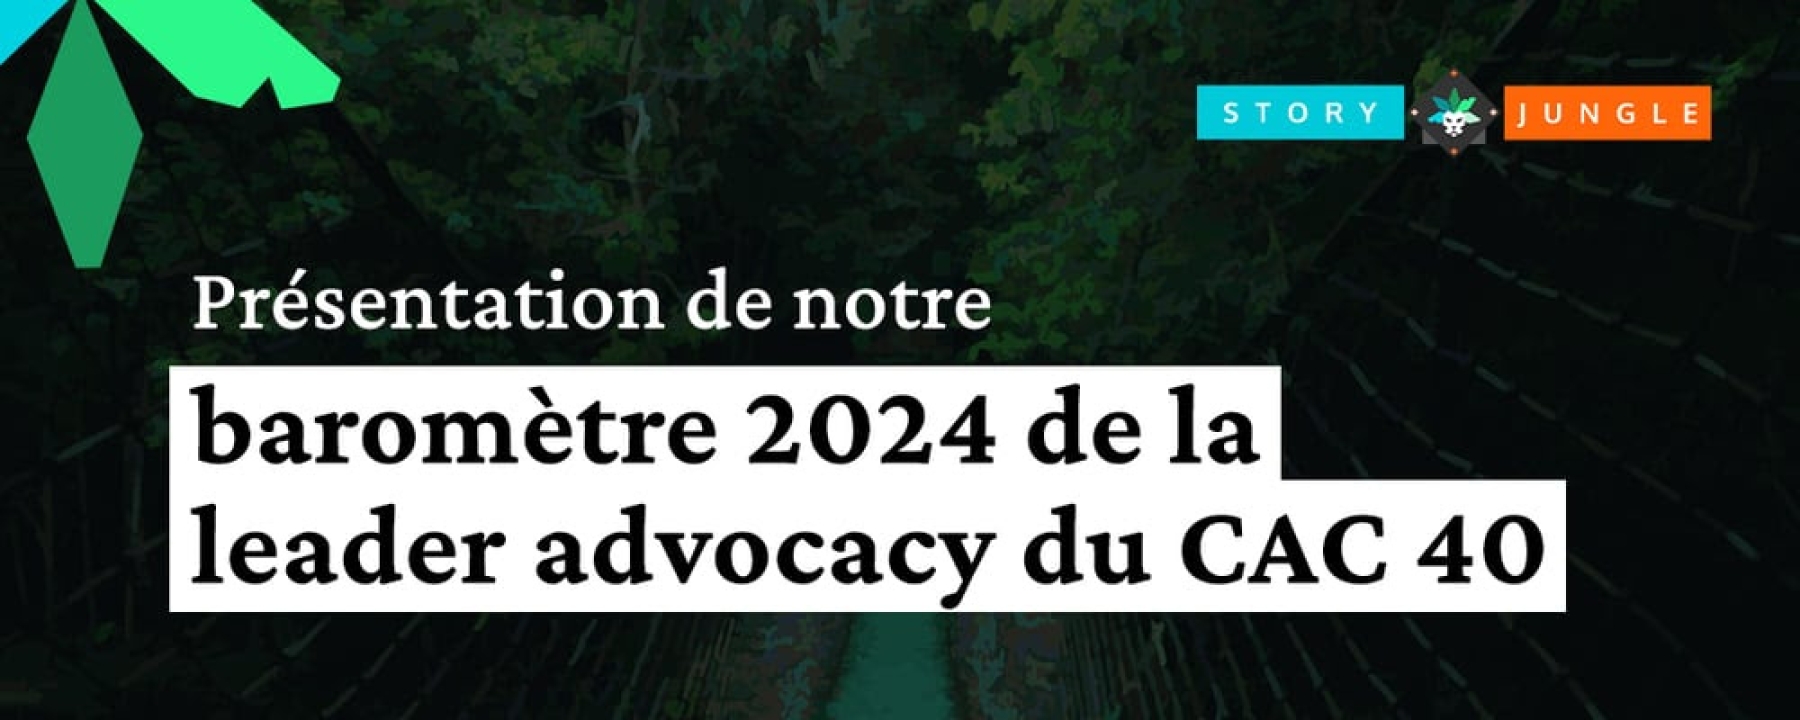 Baromètre 2024 de la leader advocacy du CAC40. 